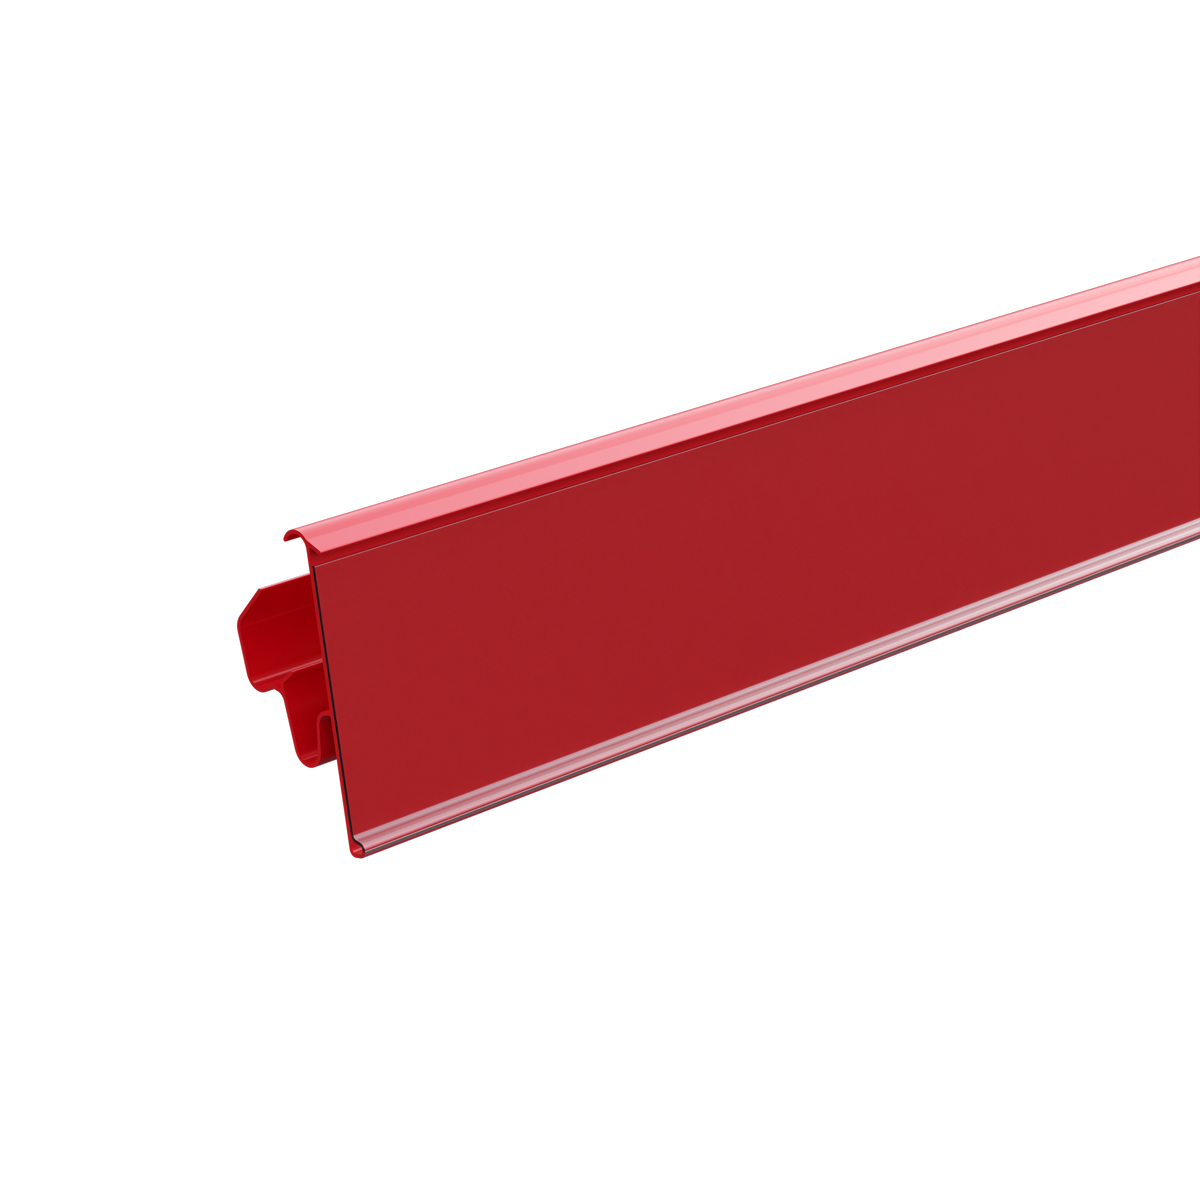 Ценникодержатель двухпозиционный LST39 длина 988 мм., цвет красный (10 шт в упаковке)